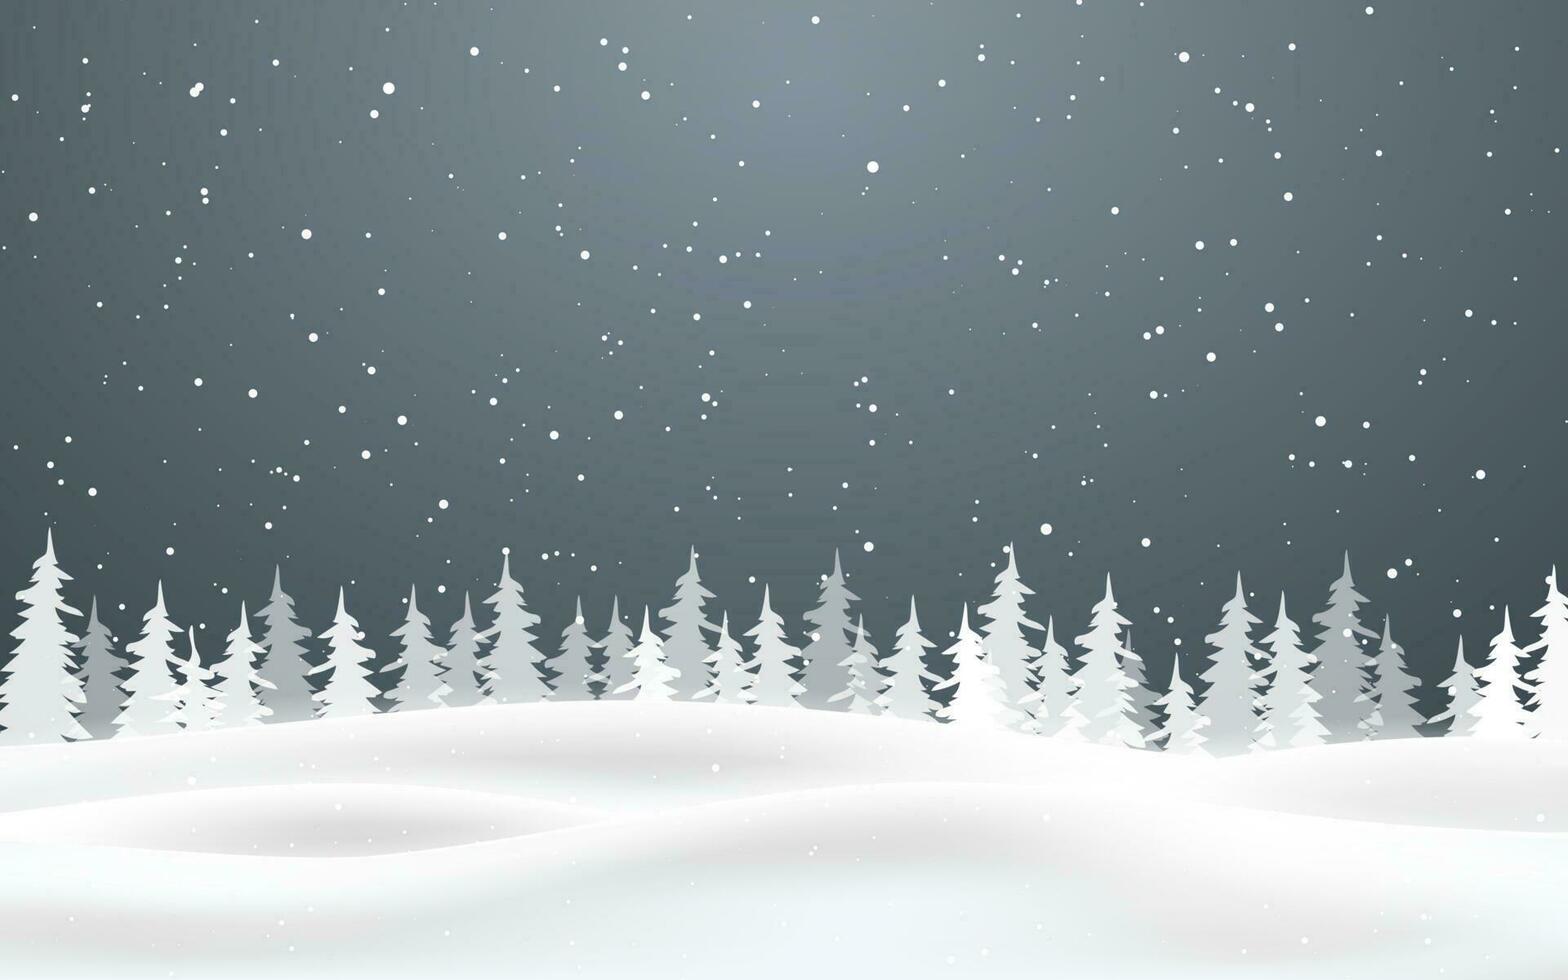 jul bakgrund av faller snö. vinter- natt. xmas kort design vektor illustration